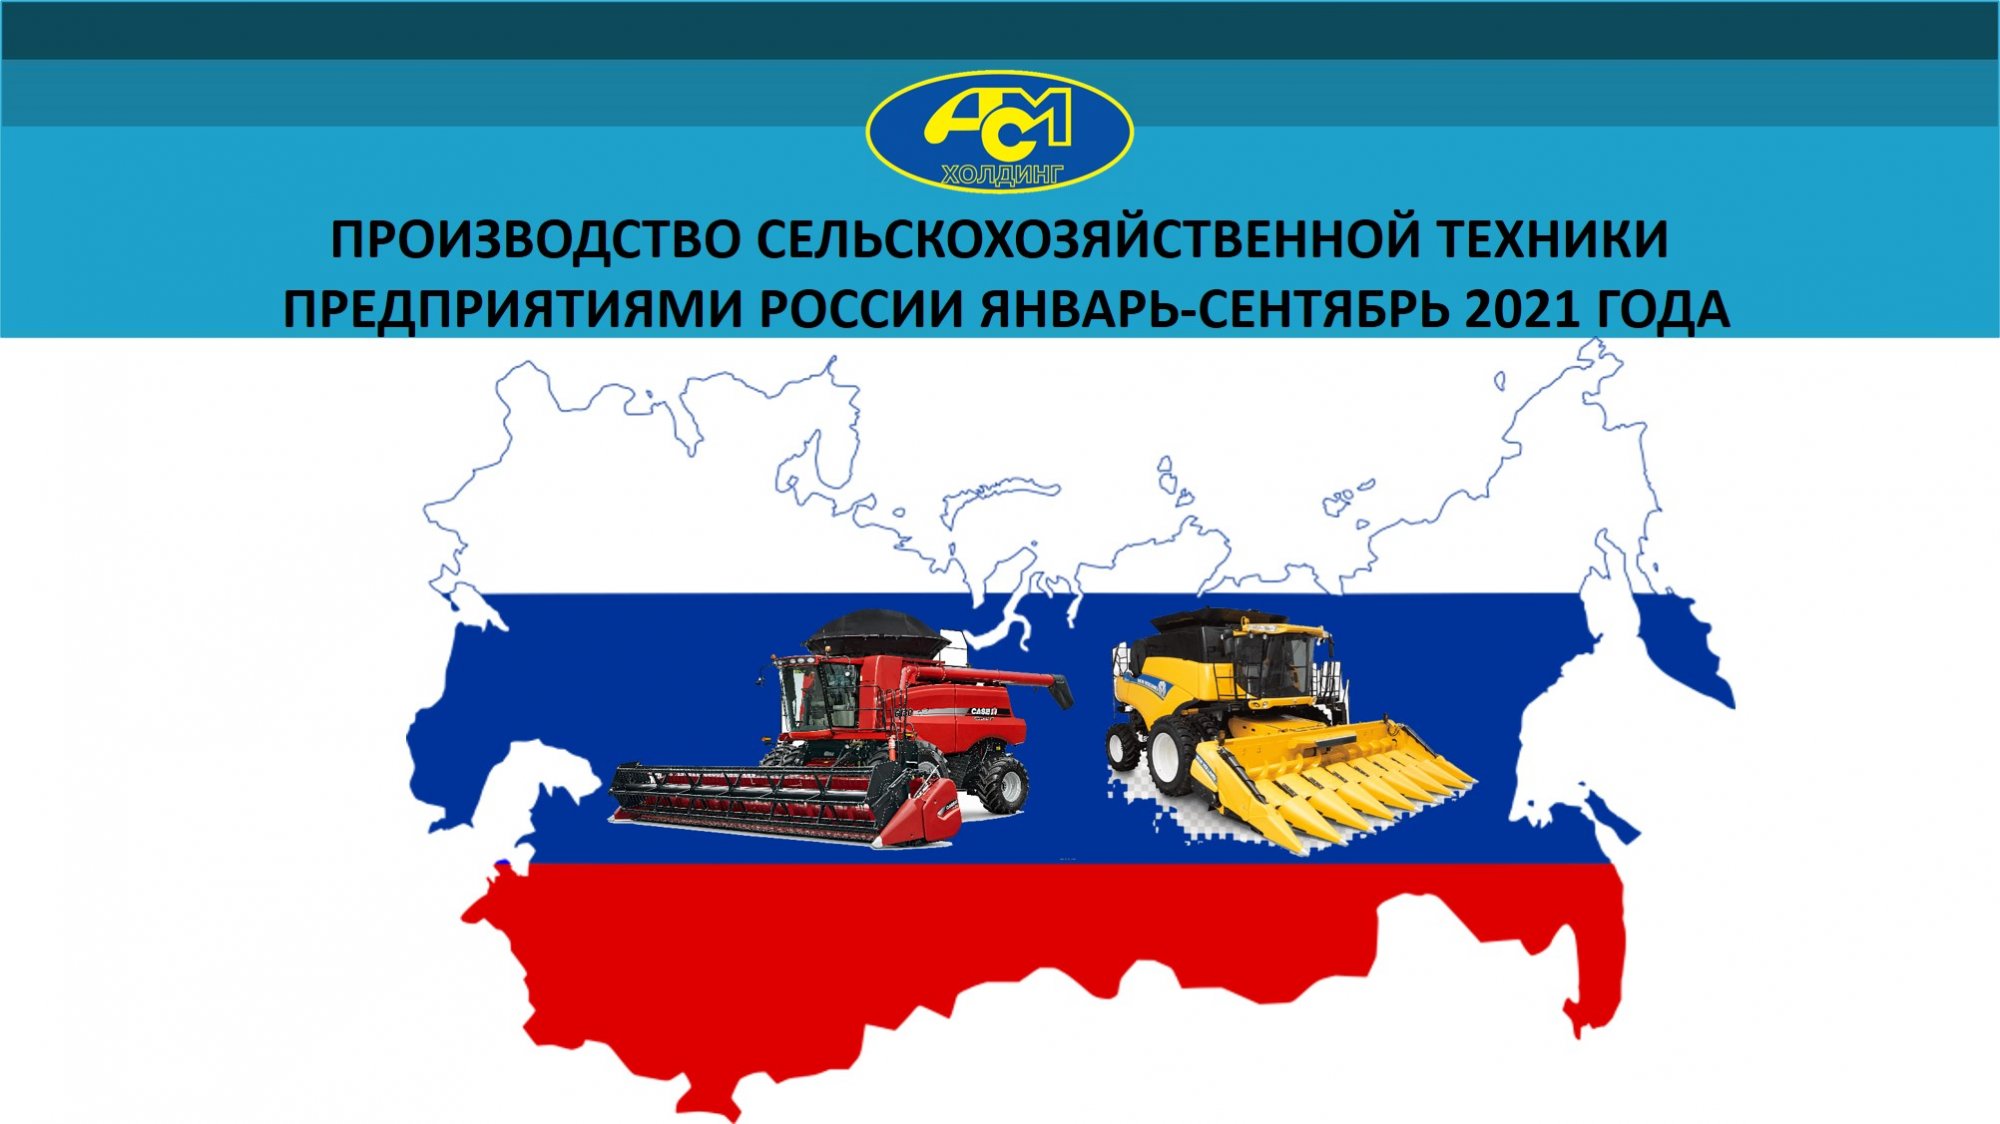 Производство и отгрузка основных видов сельскохозяйственной техники в России за январь-сентябрь 2021 года